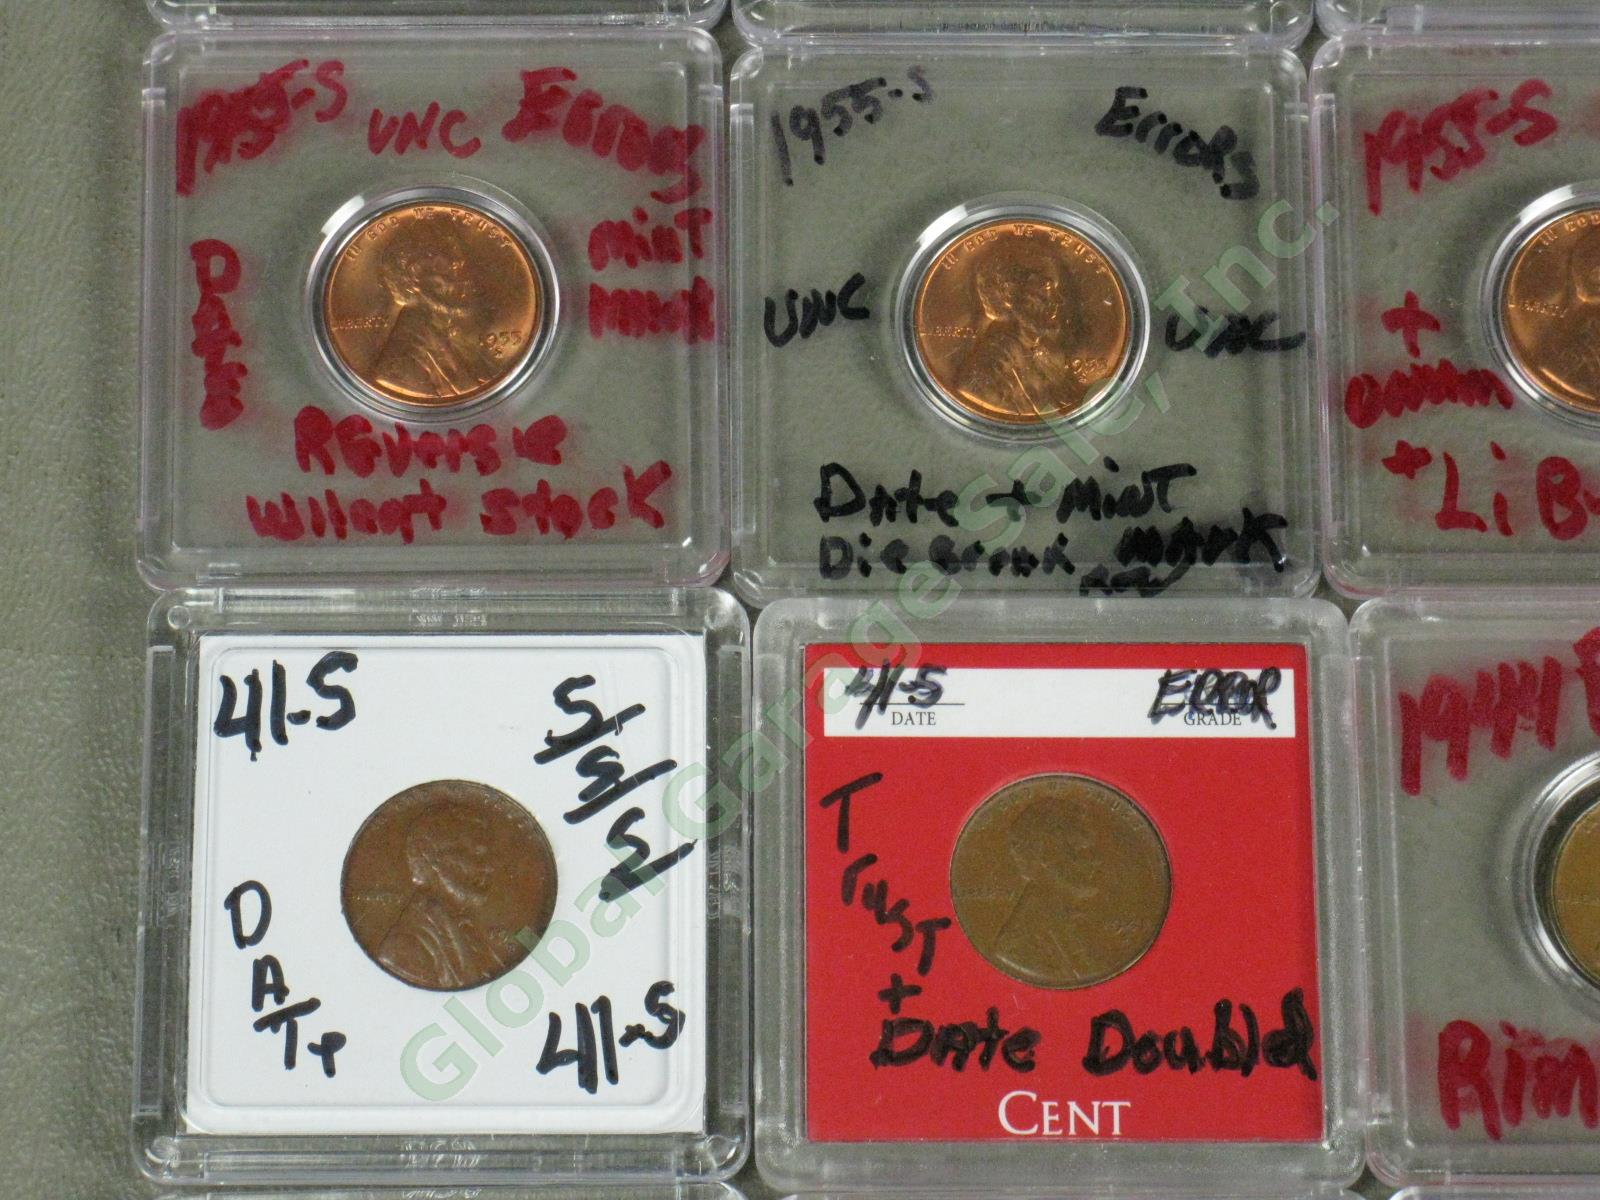 36 US Penny Mint Error Lot 12 UNC 1907 1917 1969-S ++ Doubles Die Cracks Wide AM 4